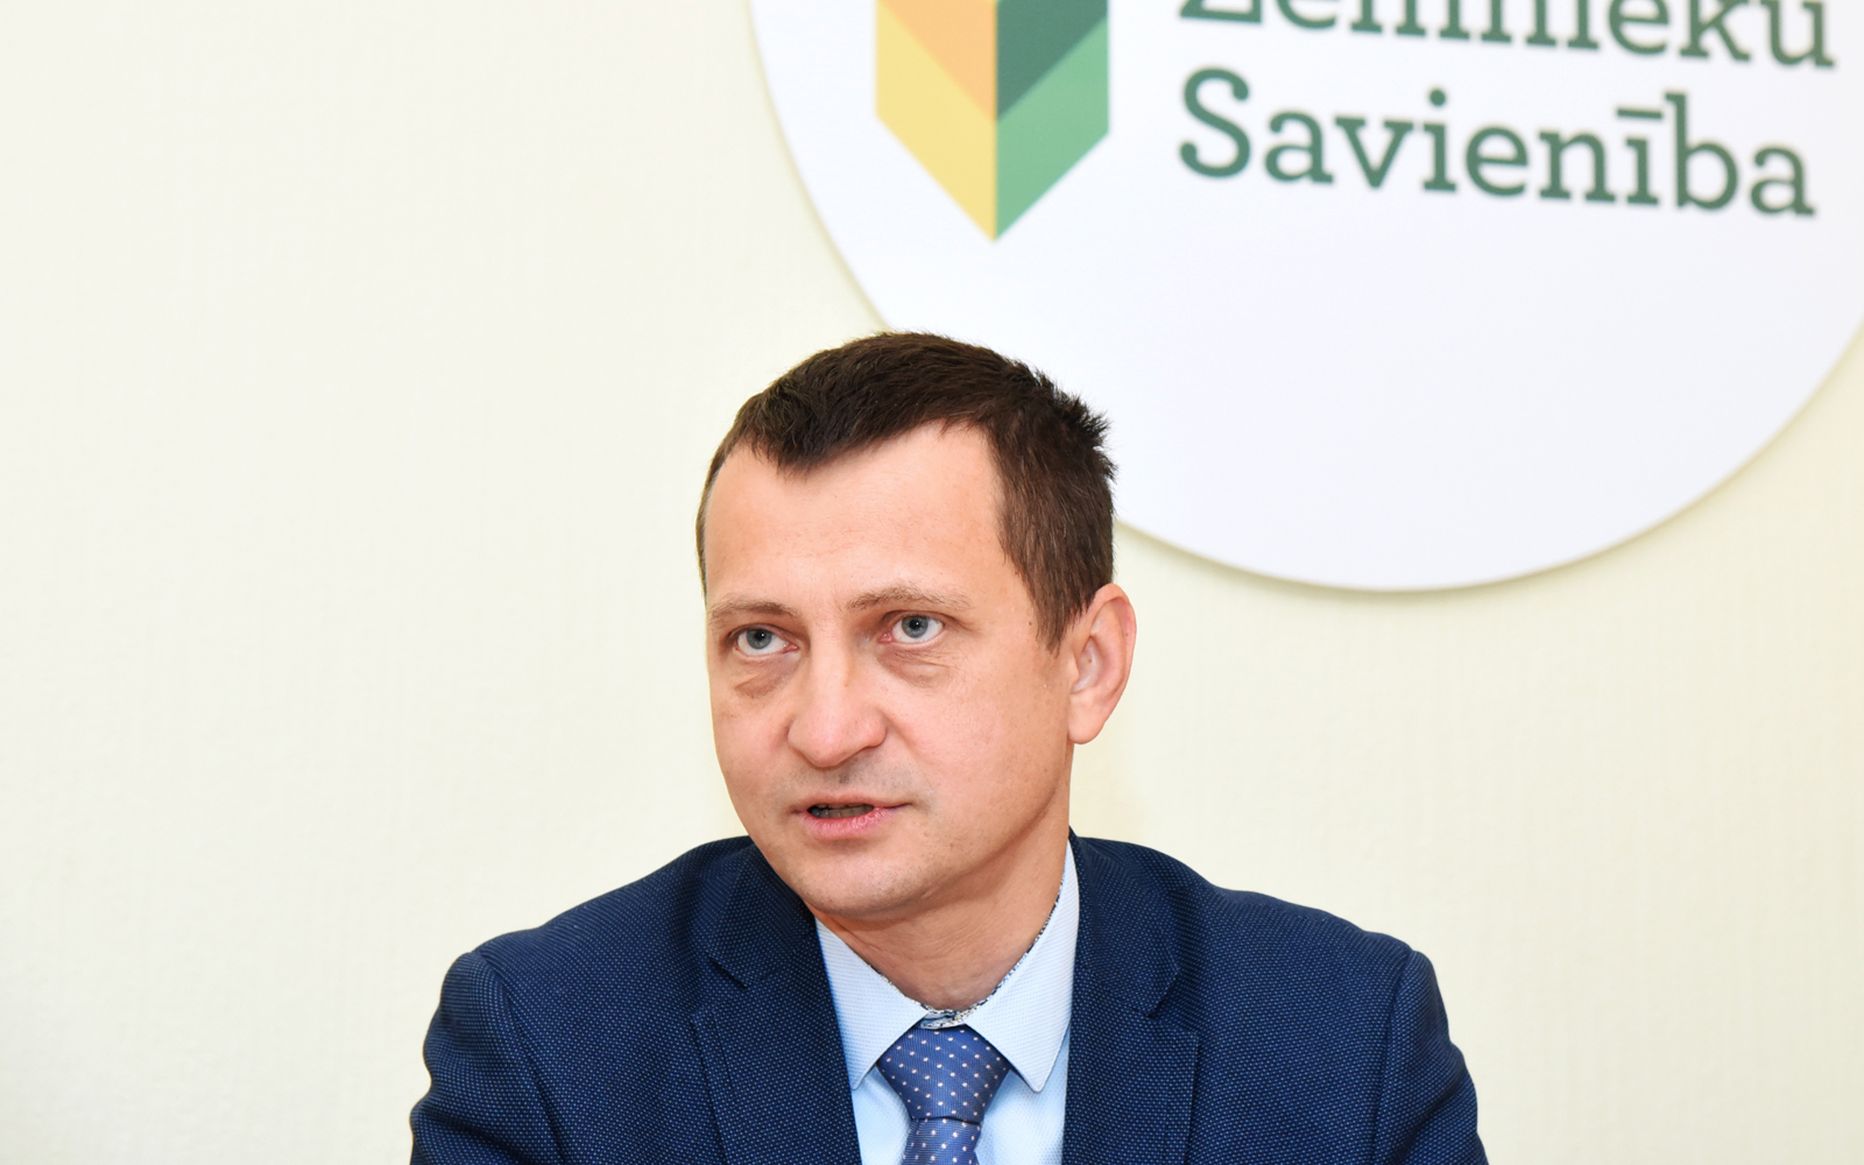 Zaļo un zemnieku savienības valdes priekšsēdētājs Armands Krauze